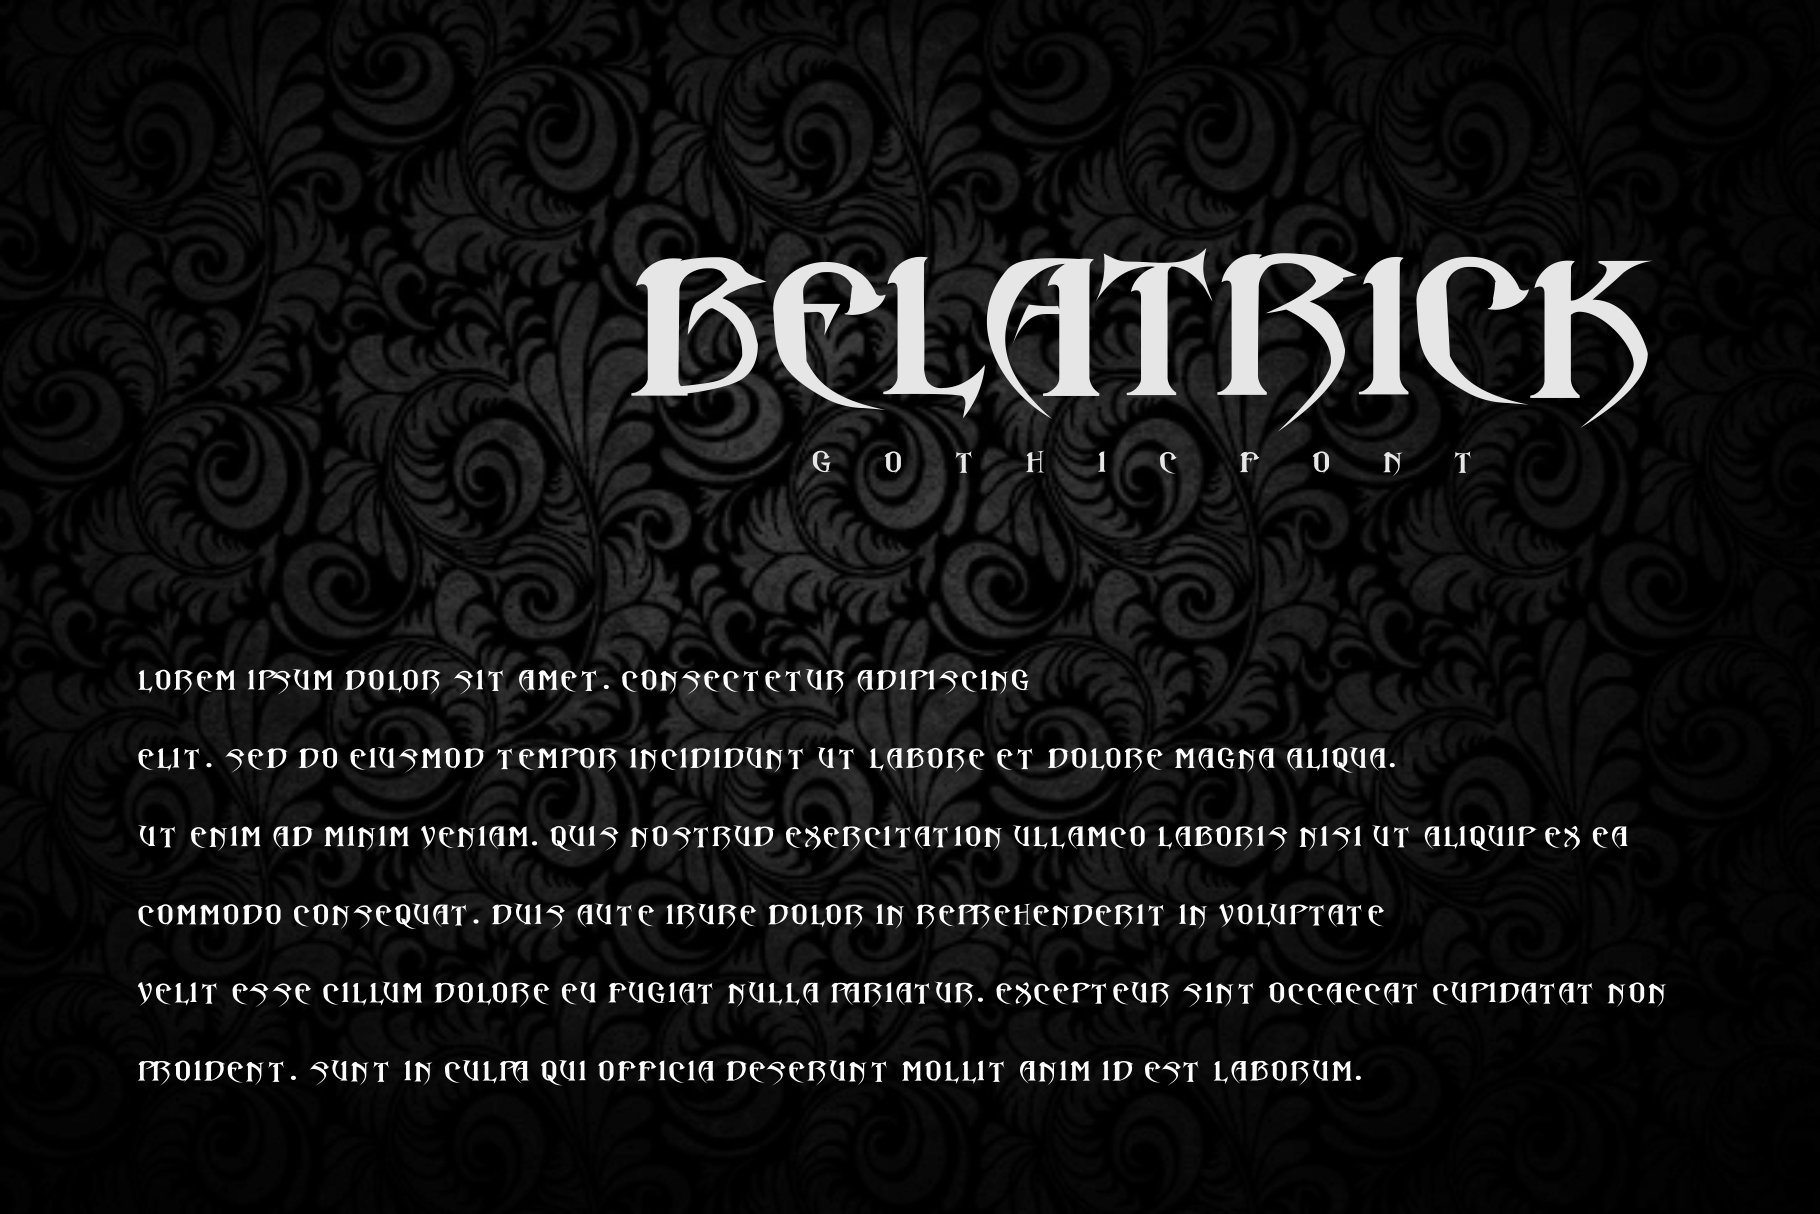 Belatrick - Blackletter Fontpreview image.